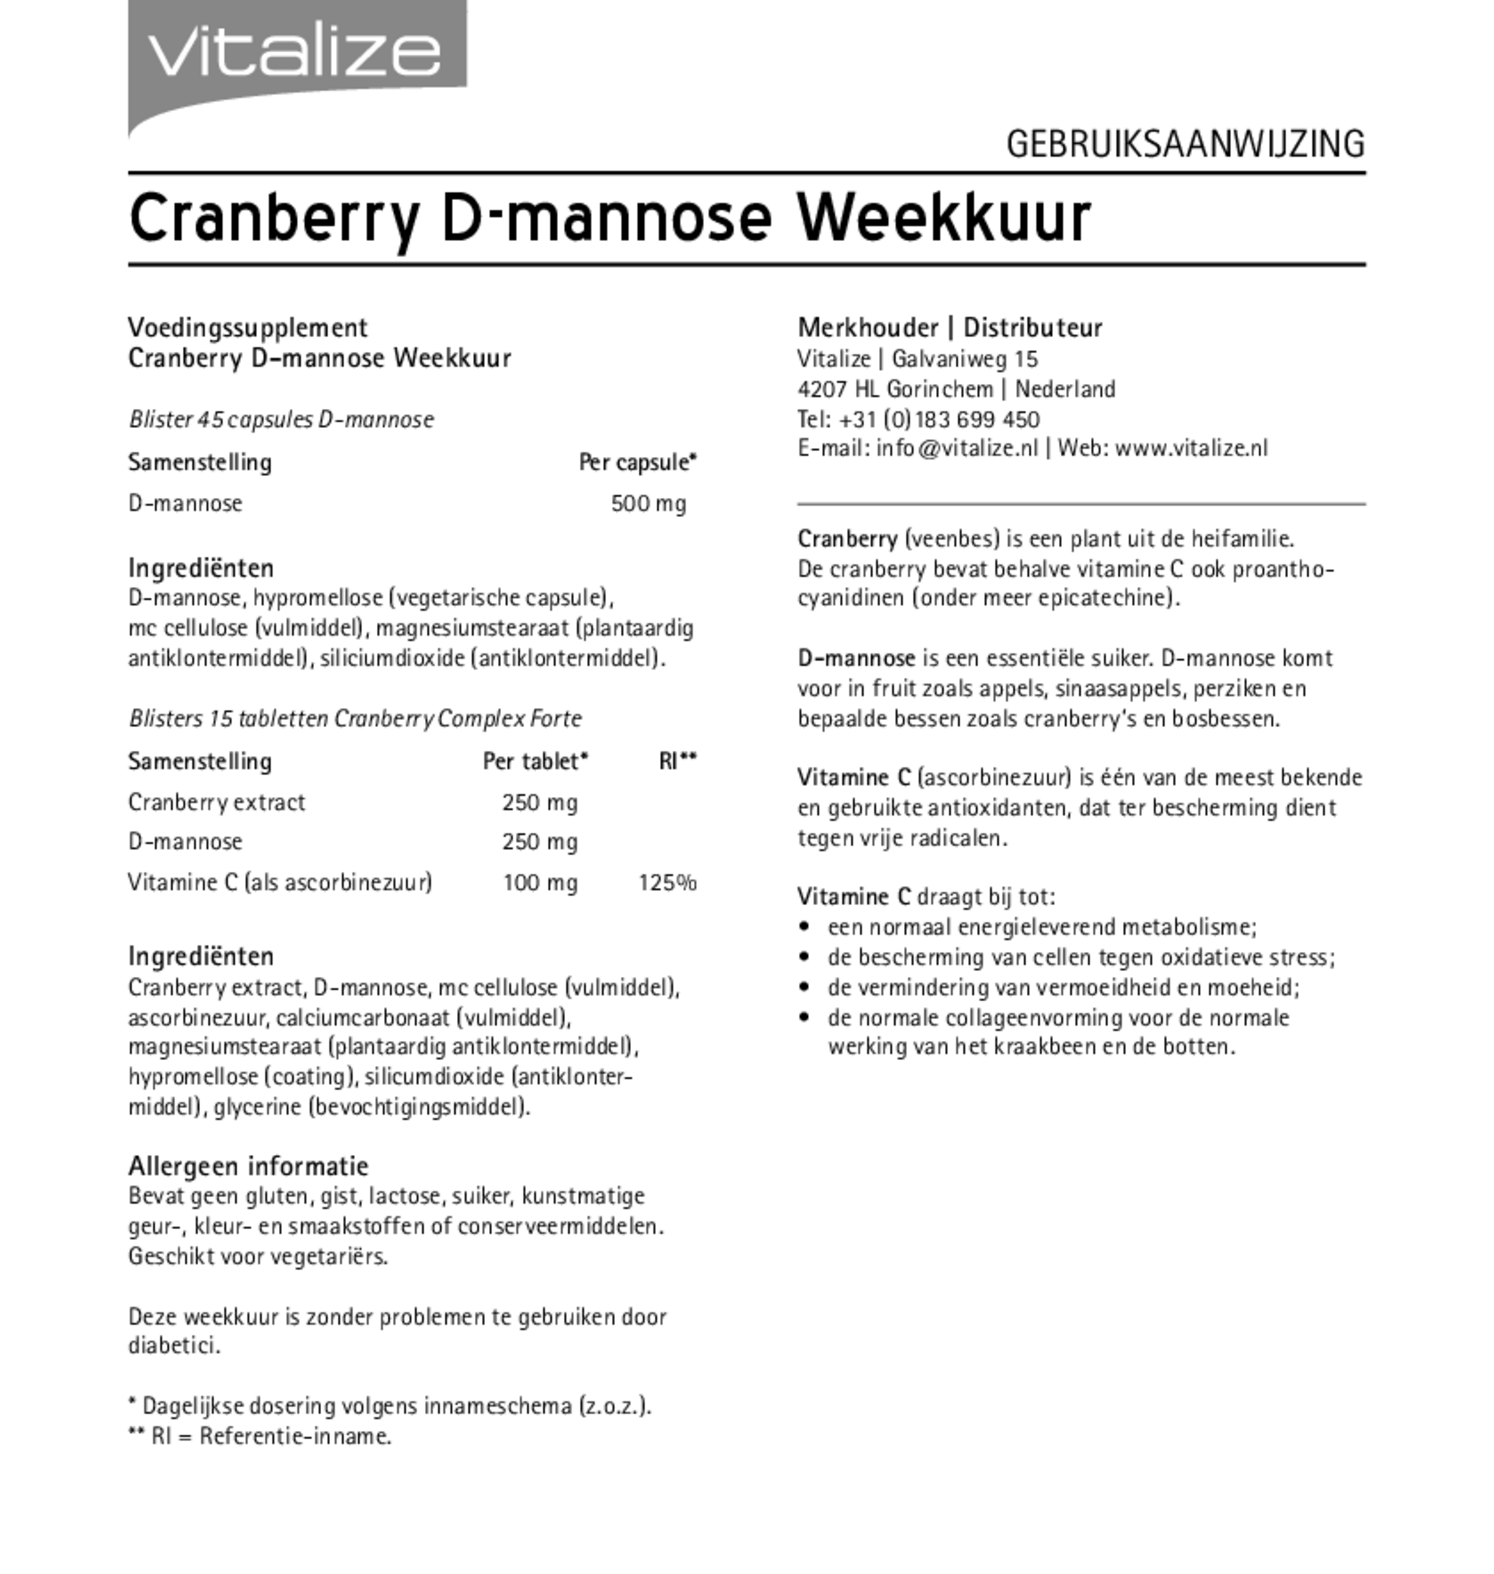 Cranberry D-mannose Weekkuur Capsules & Tabletten afbeelding van document #1, gebruiksaanwijzing